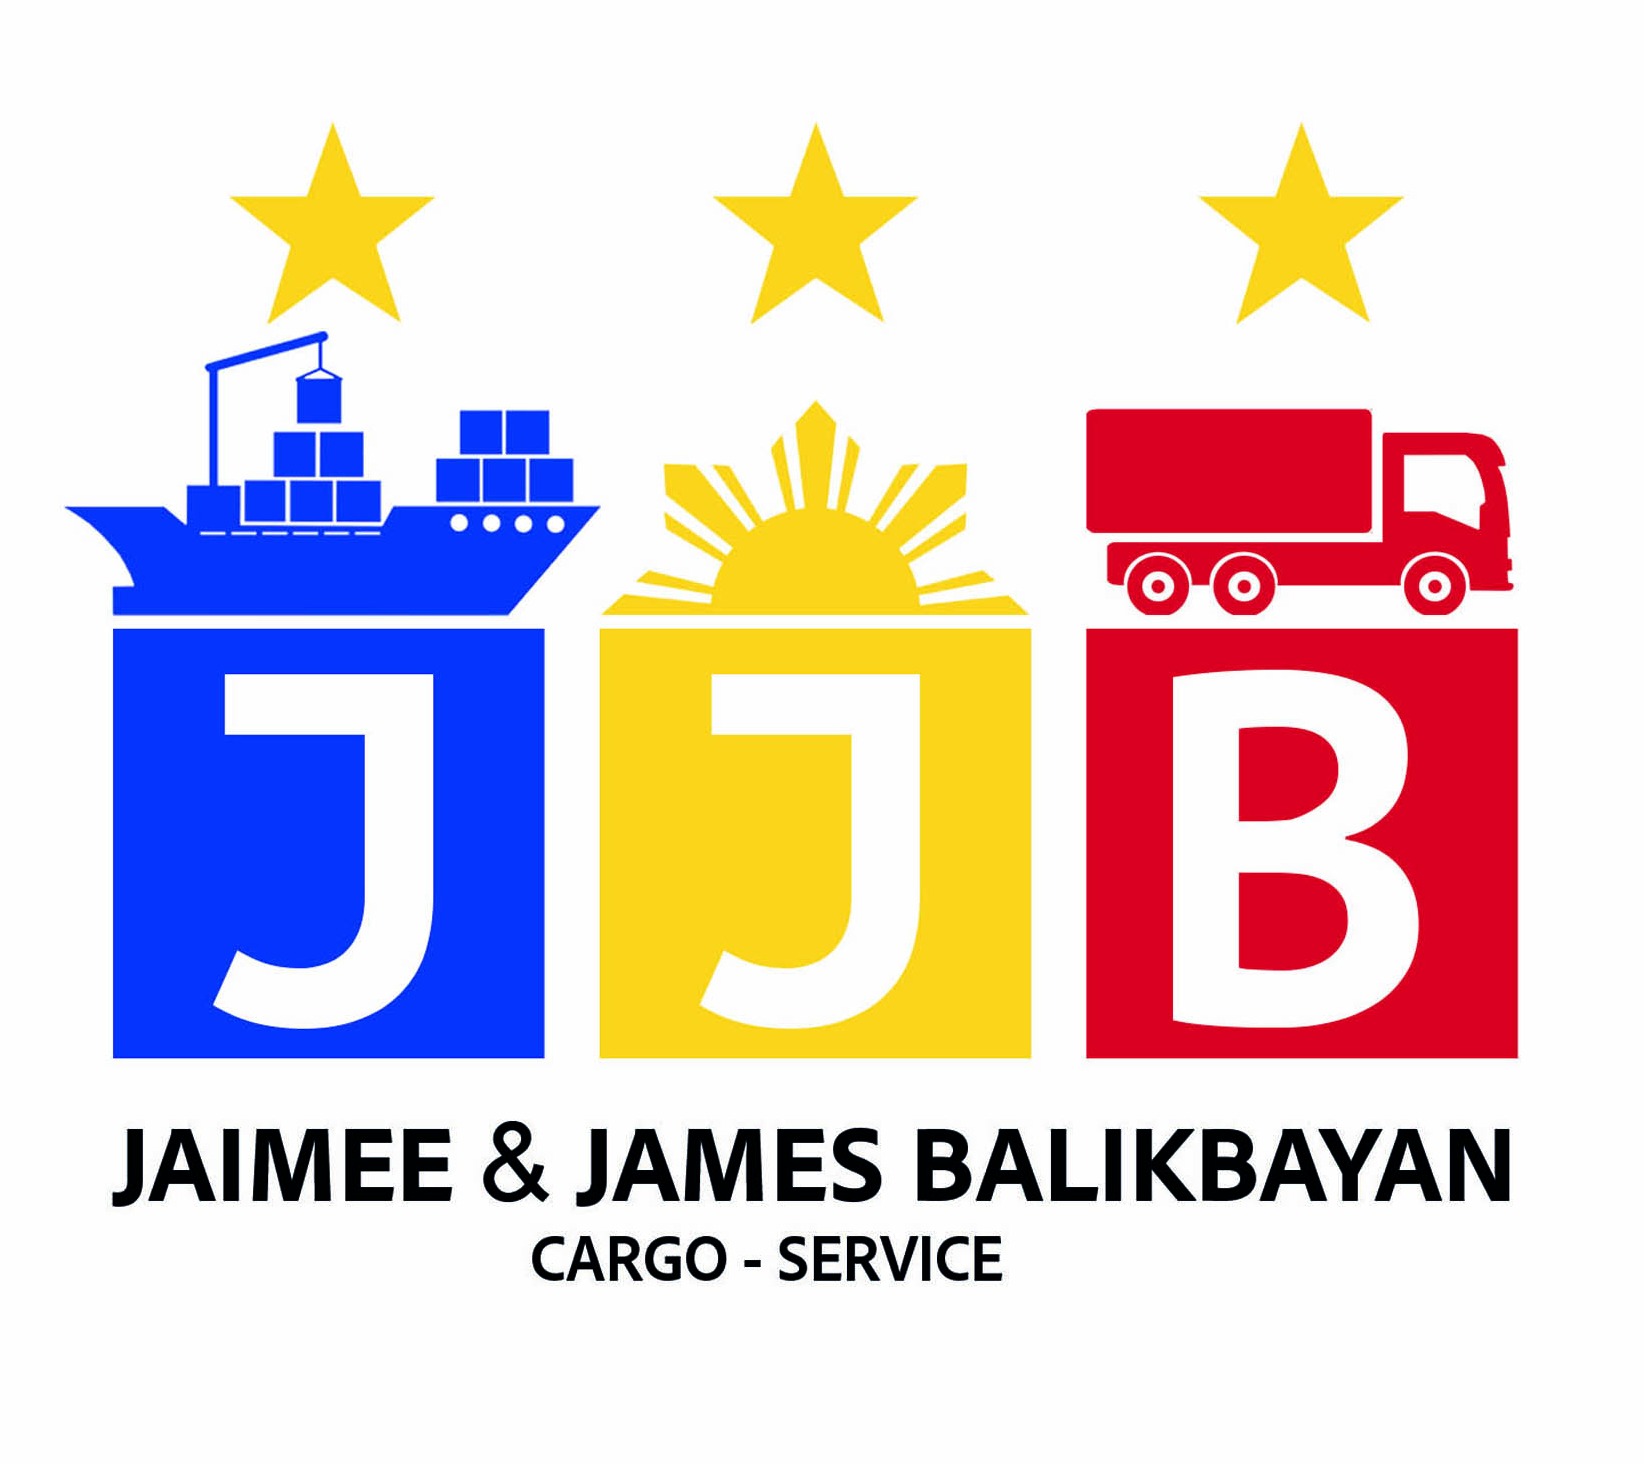 Jaimee & James Balikbayan Cargo